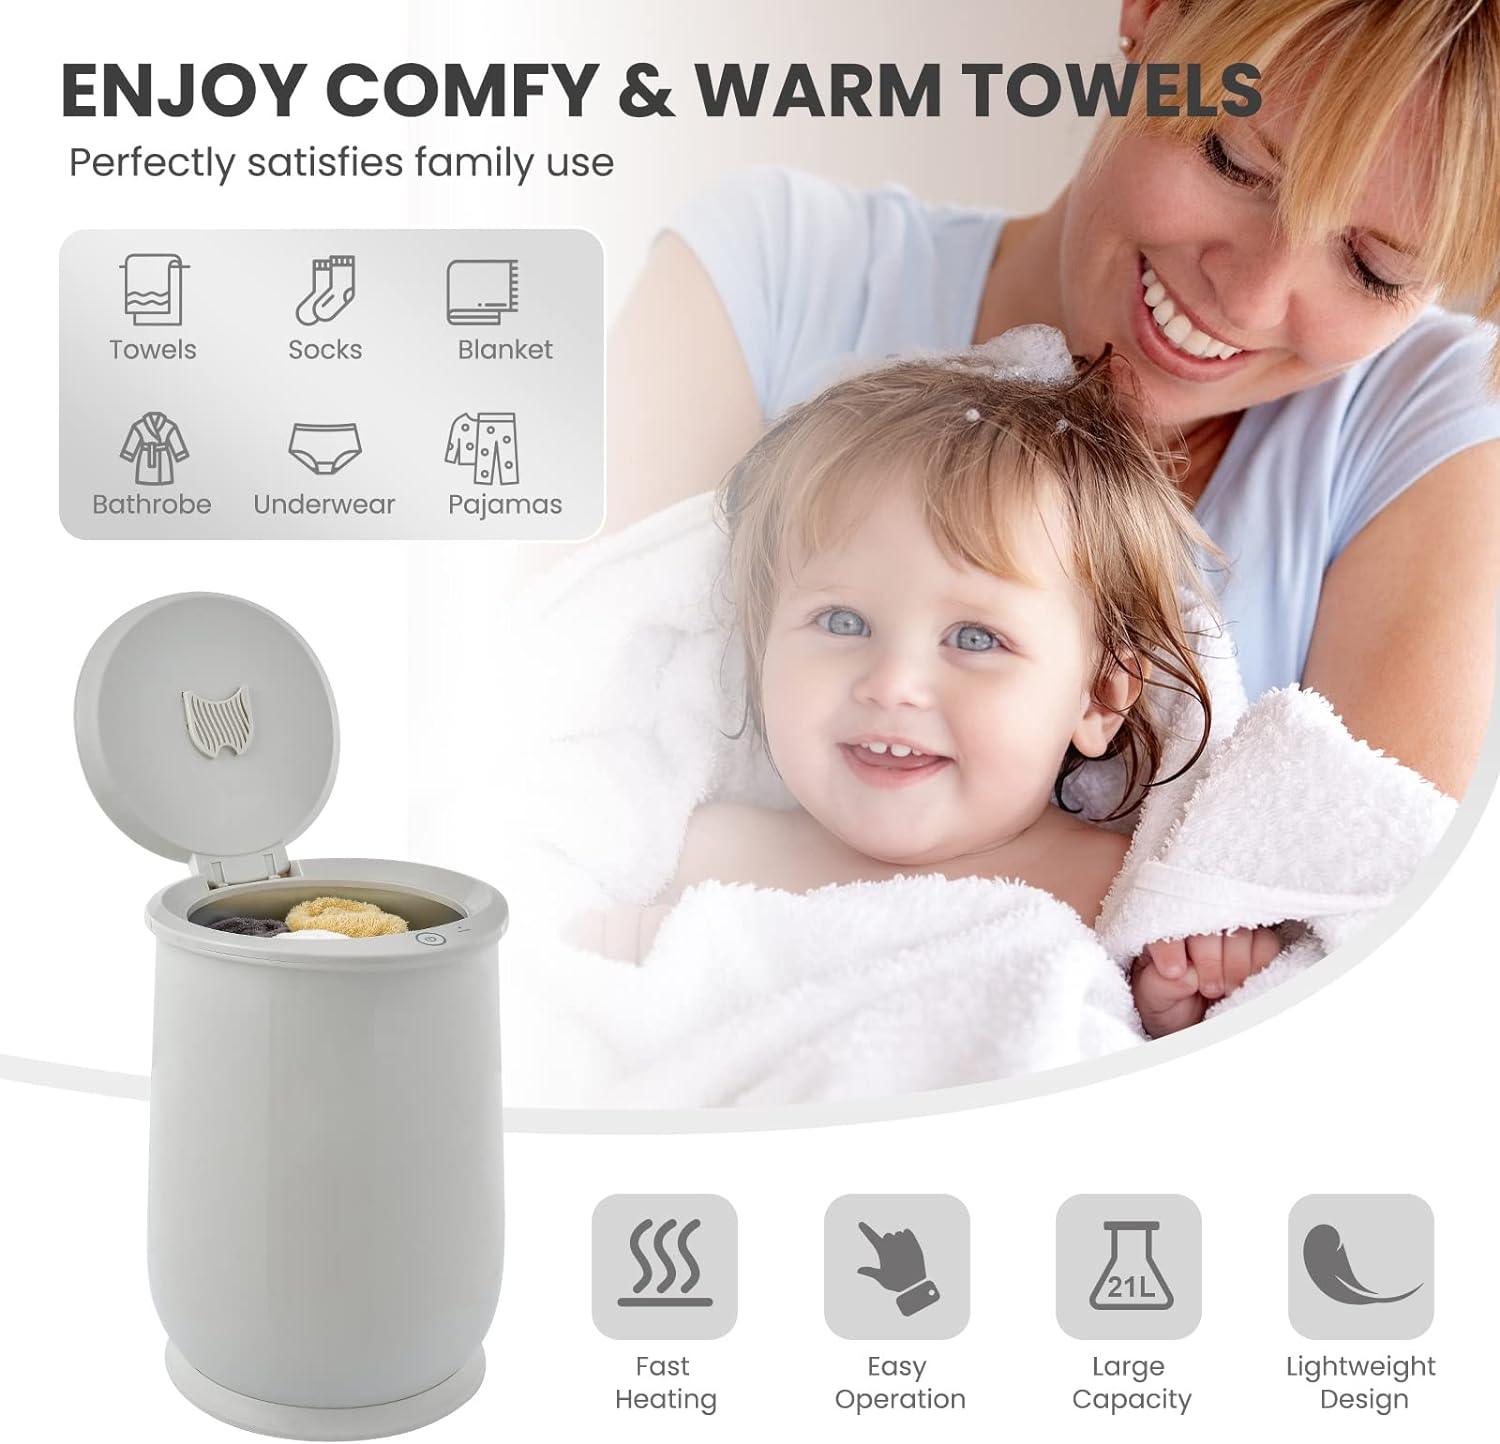 Cubo calentador de toallas para baño, calentador portátil de toallas calientes - VIRTUAL MUEBLES